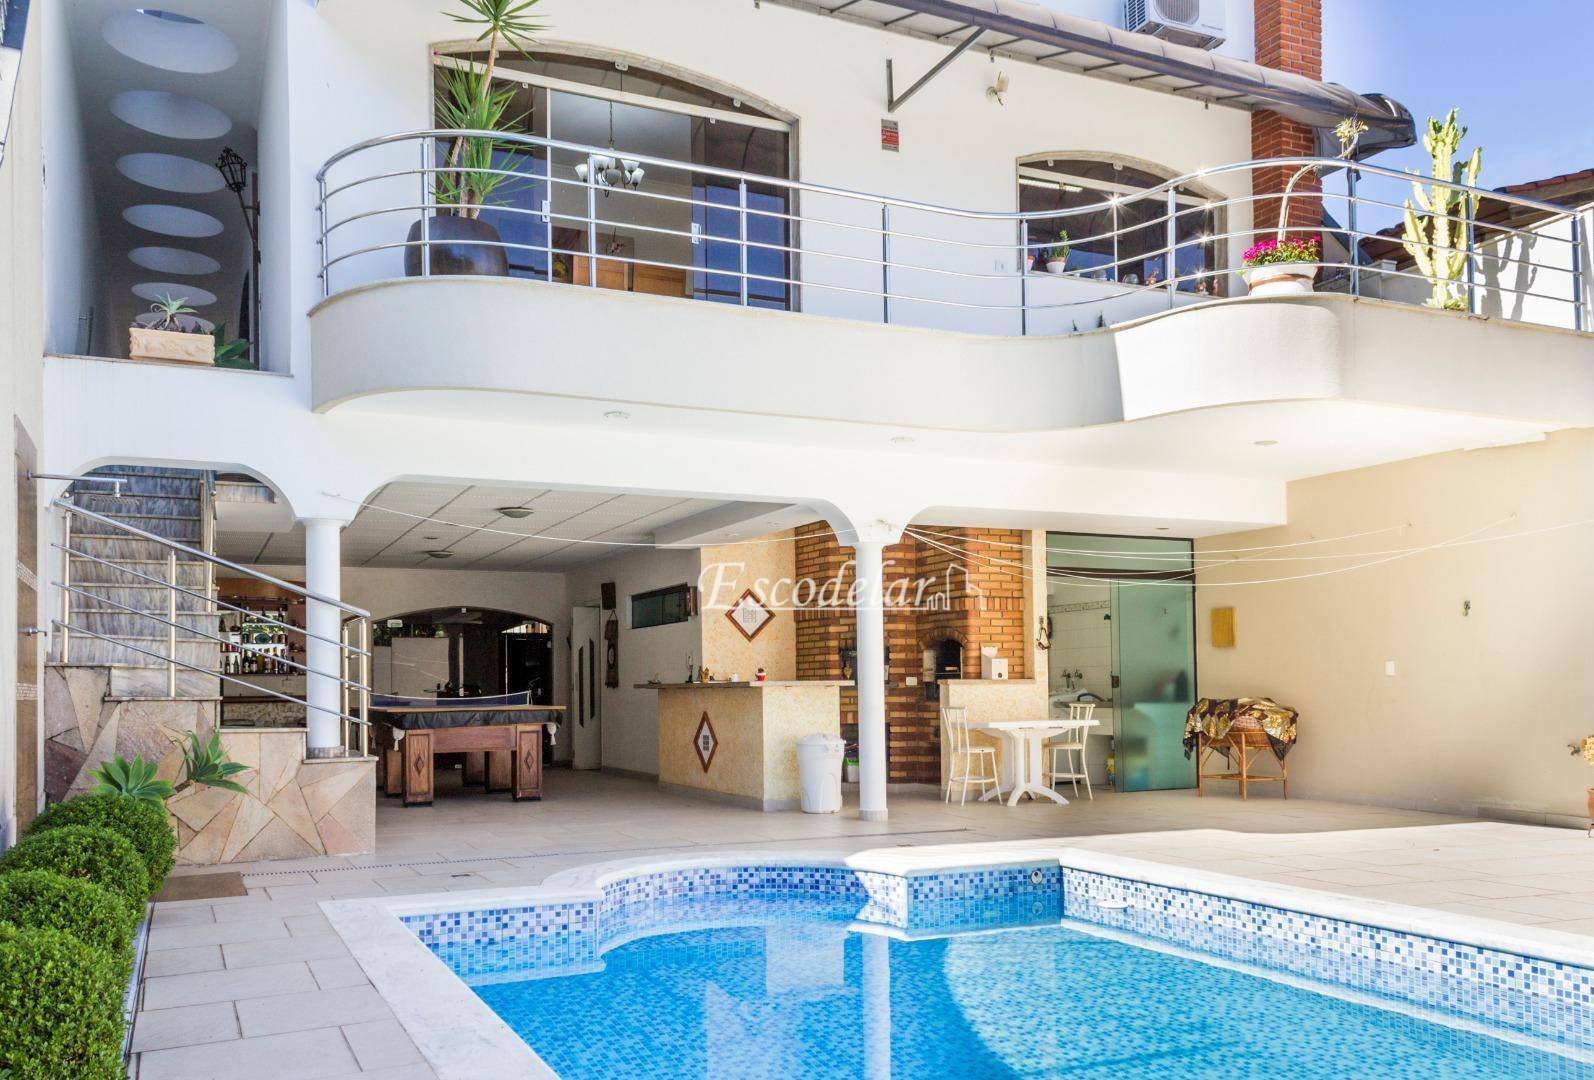 Casa com piscina e 5 dormitórios à venda, 518 m² por R$ 3.180.000 - Jardim França - São Paulo/SP